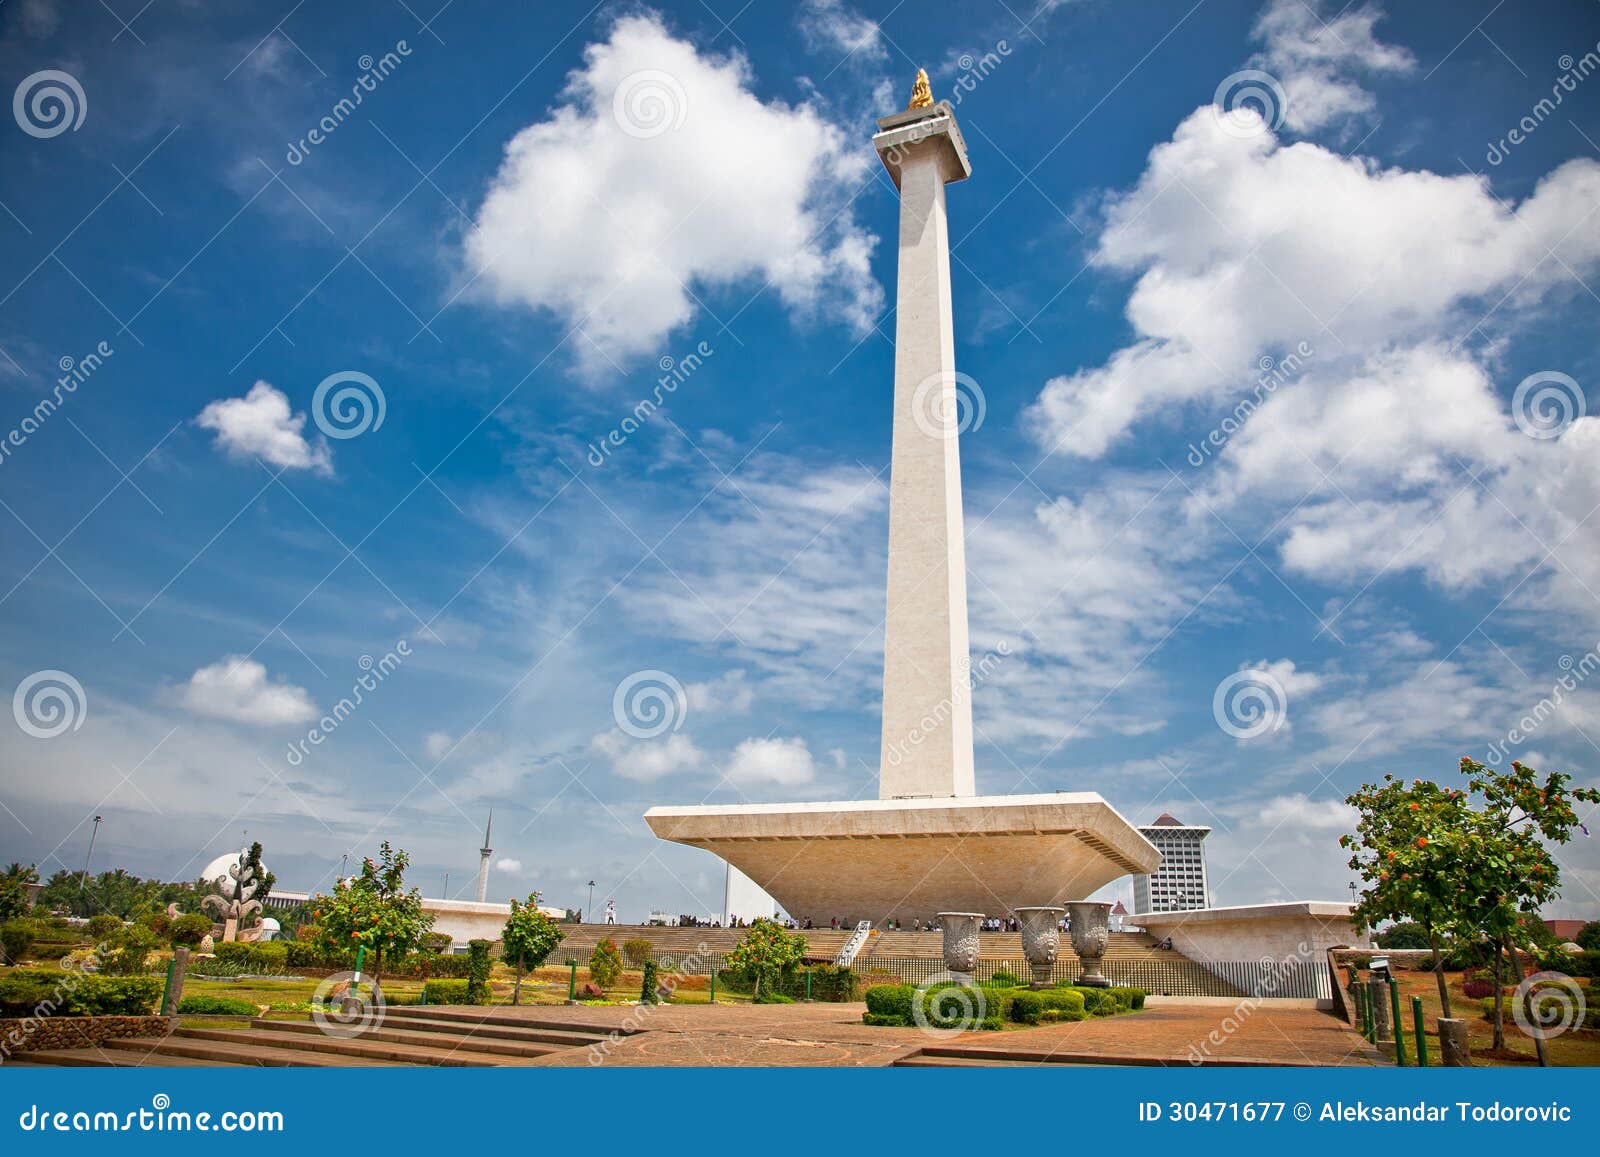 national monument monas. merdeka square, jakarta, indonesia